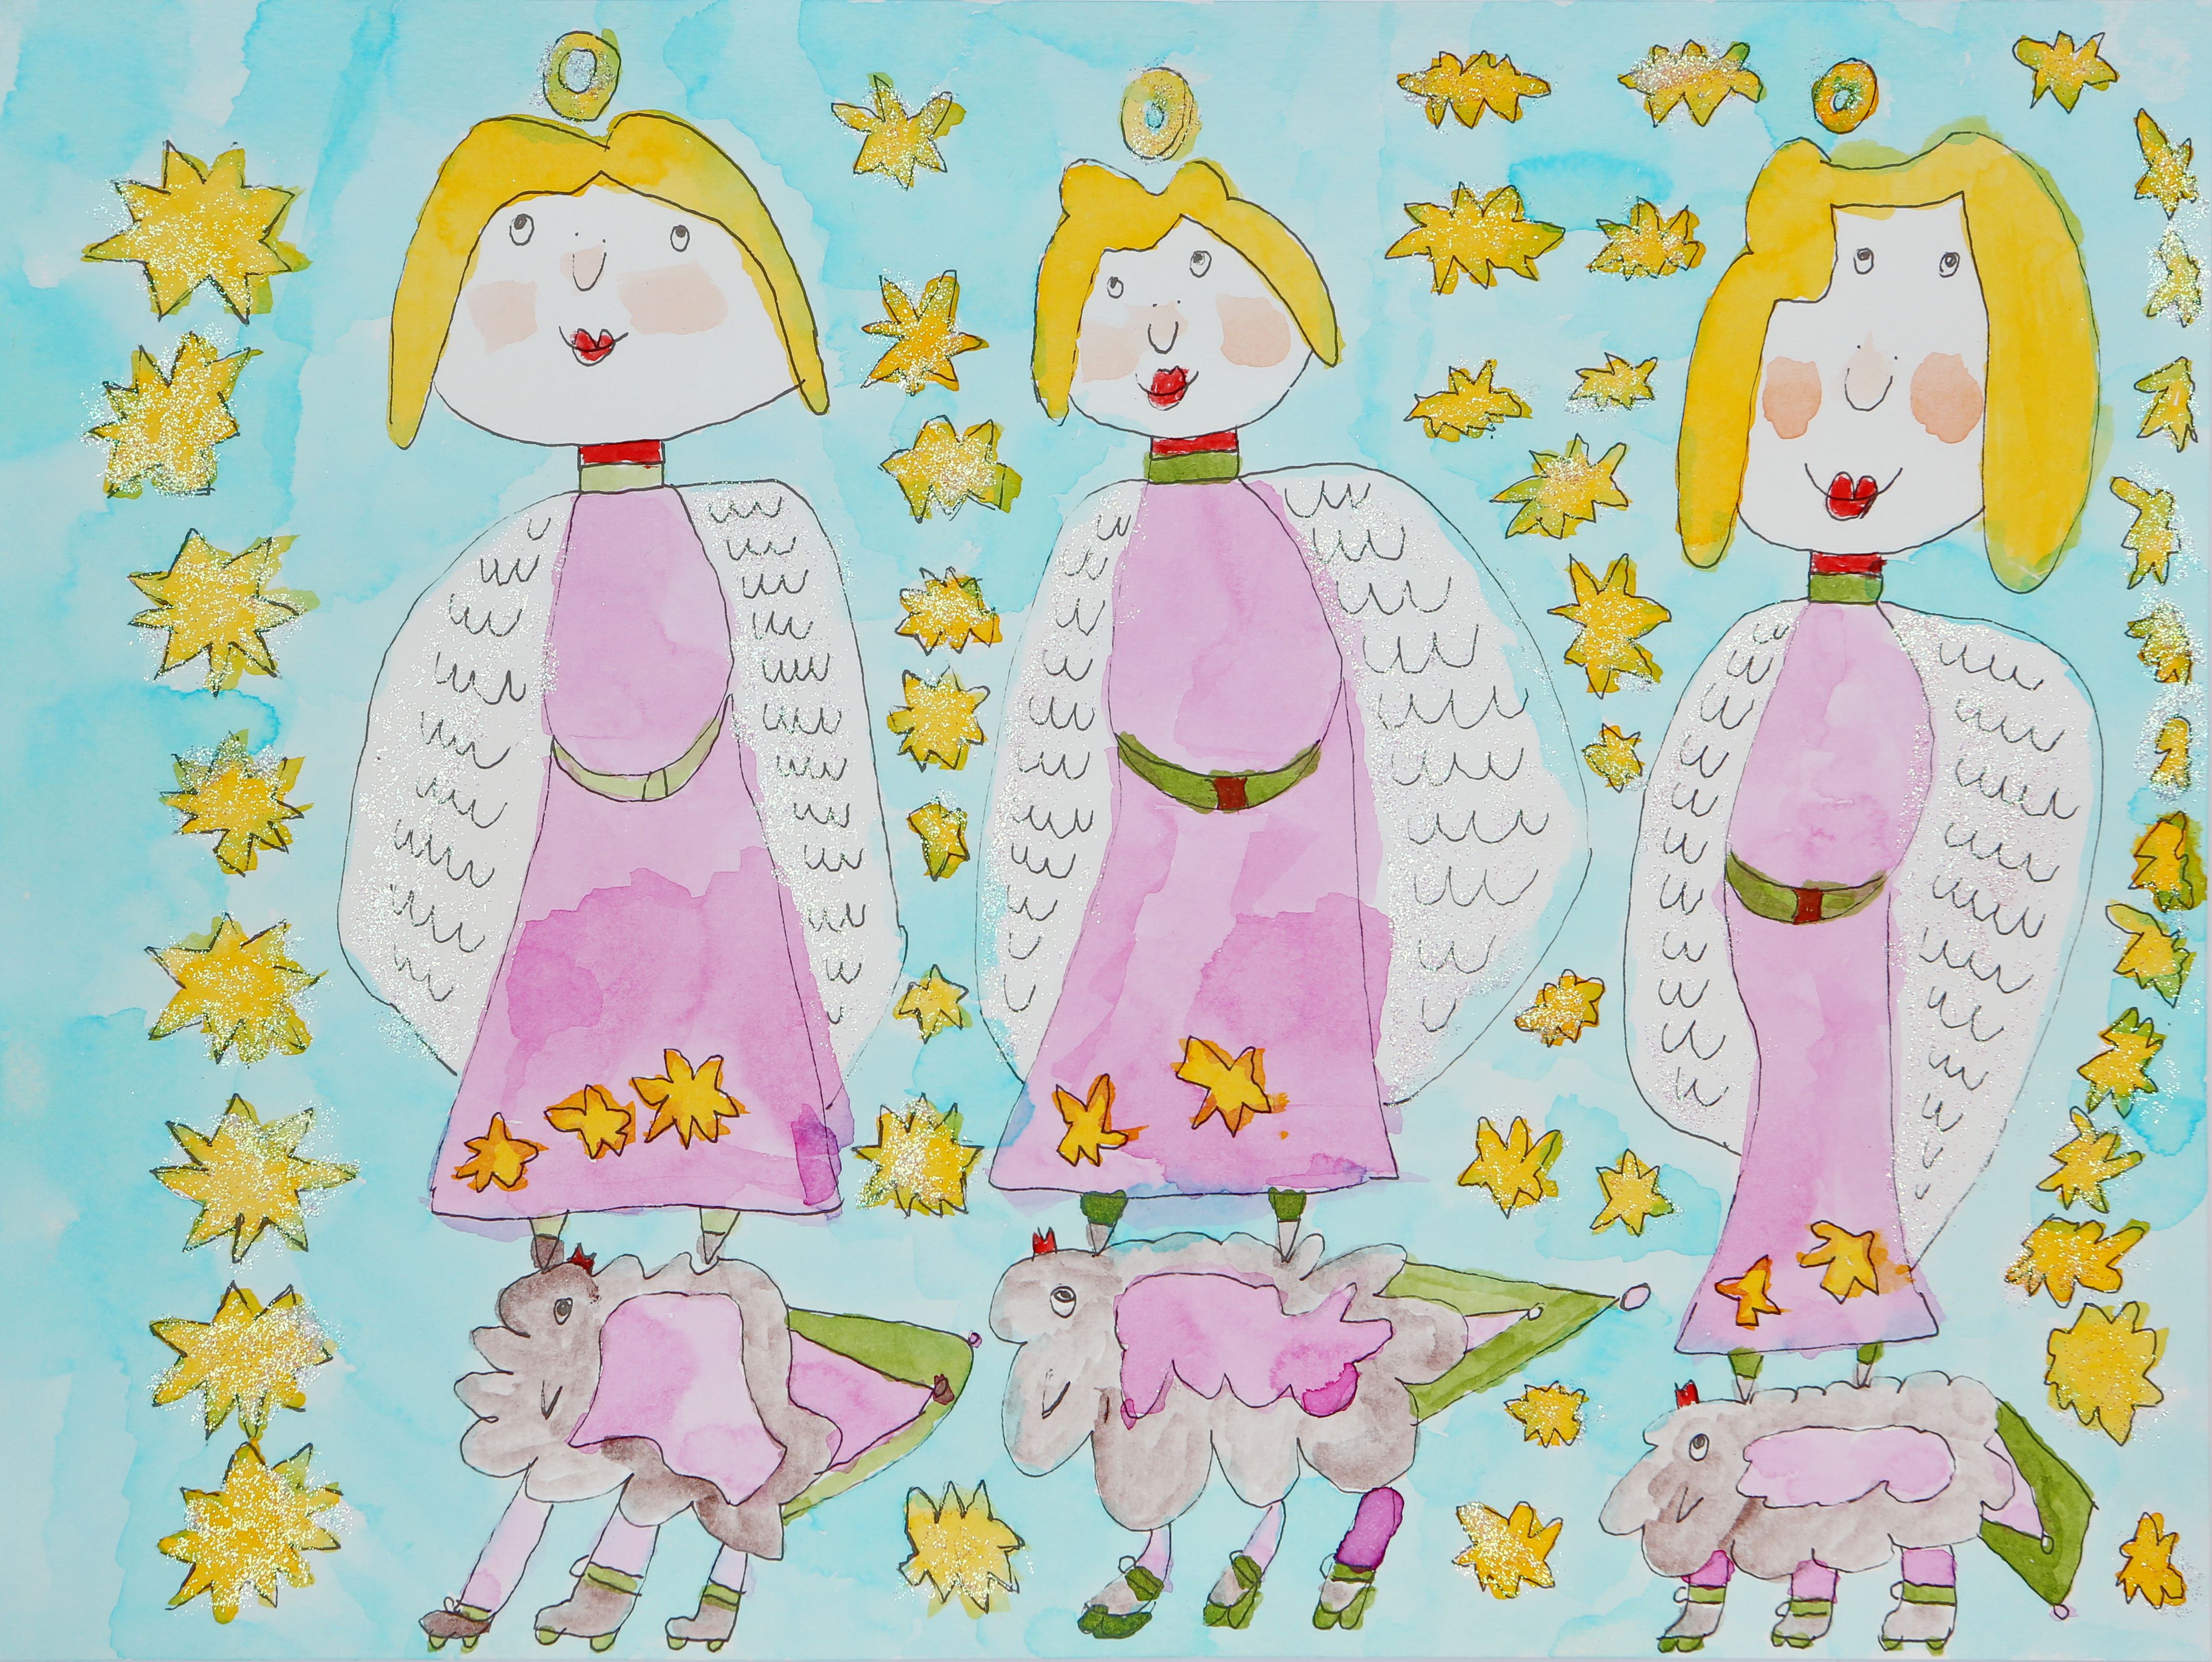 Tuschezeichnung: drei Engel auf Schafen stehend und umgeben von Sternen.